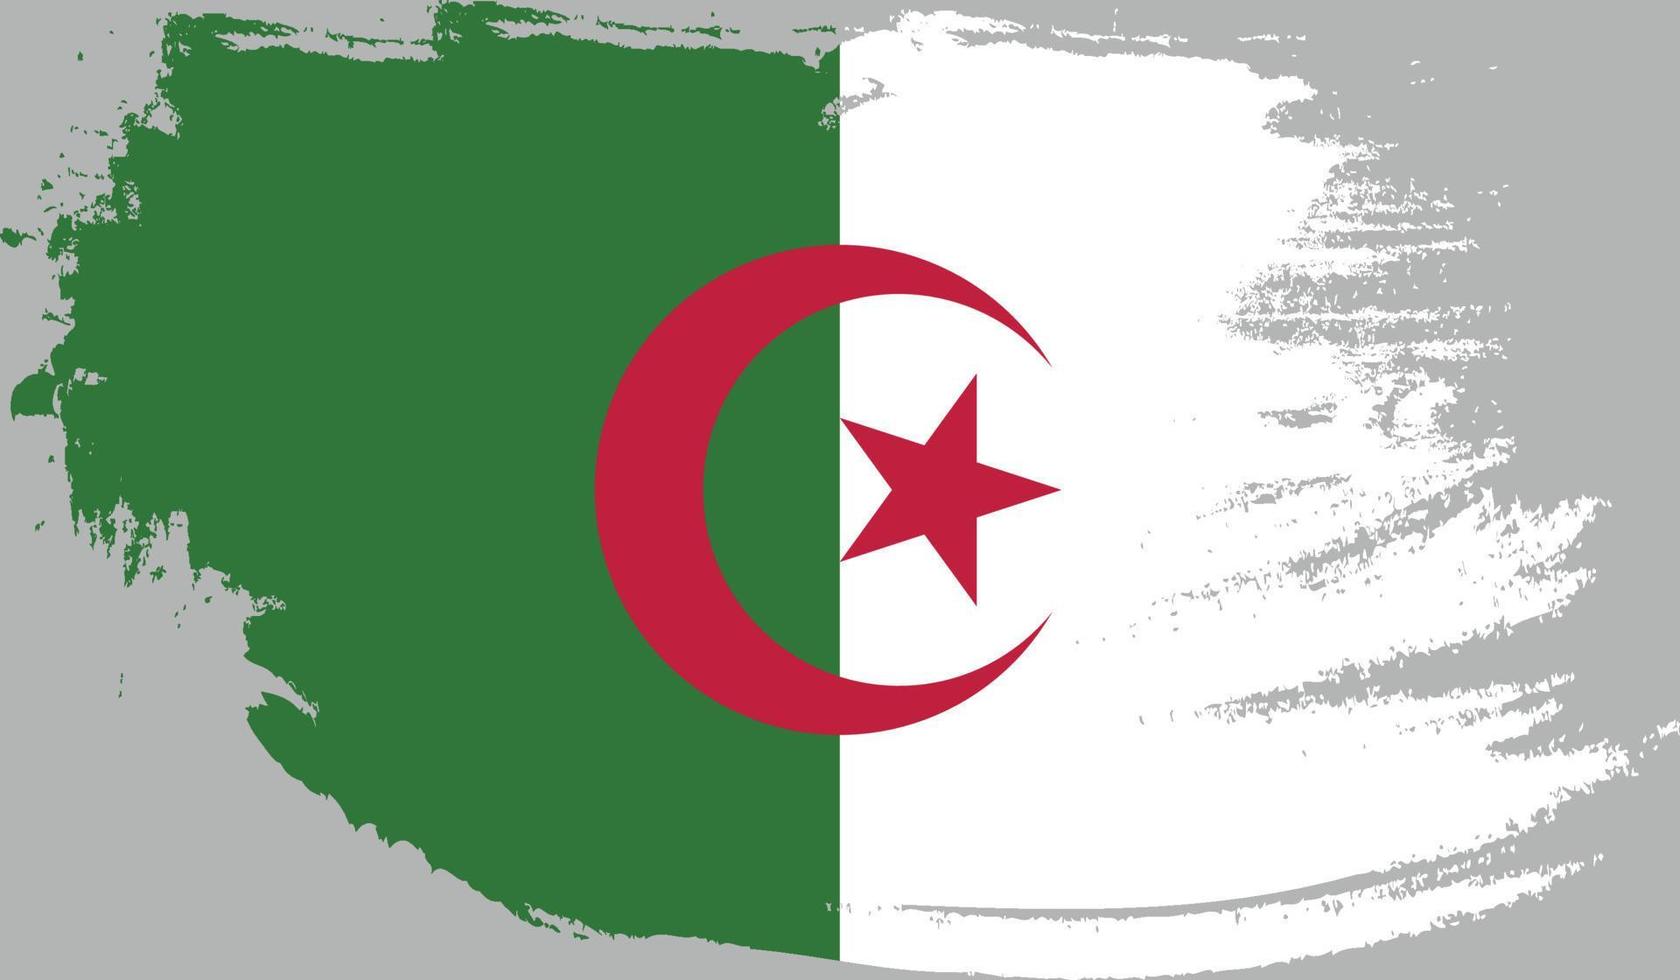 bandeira da argélia com textura grunge vetor